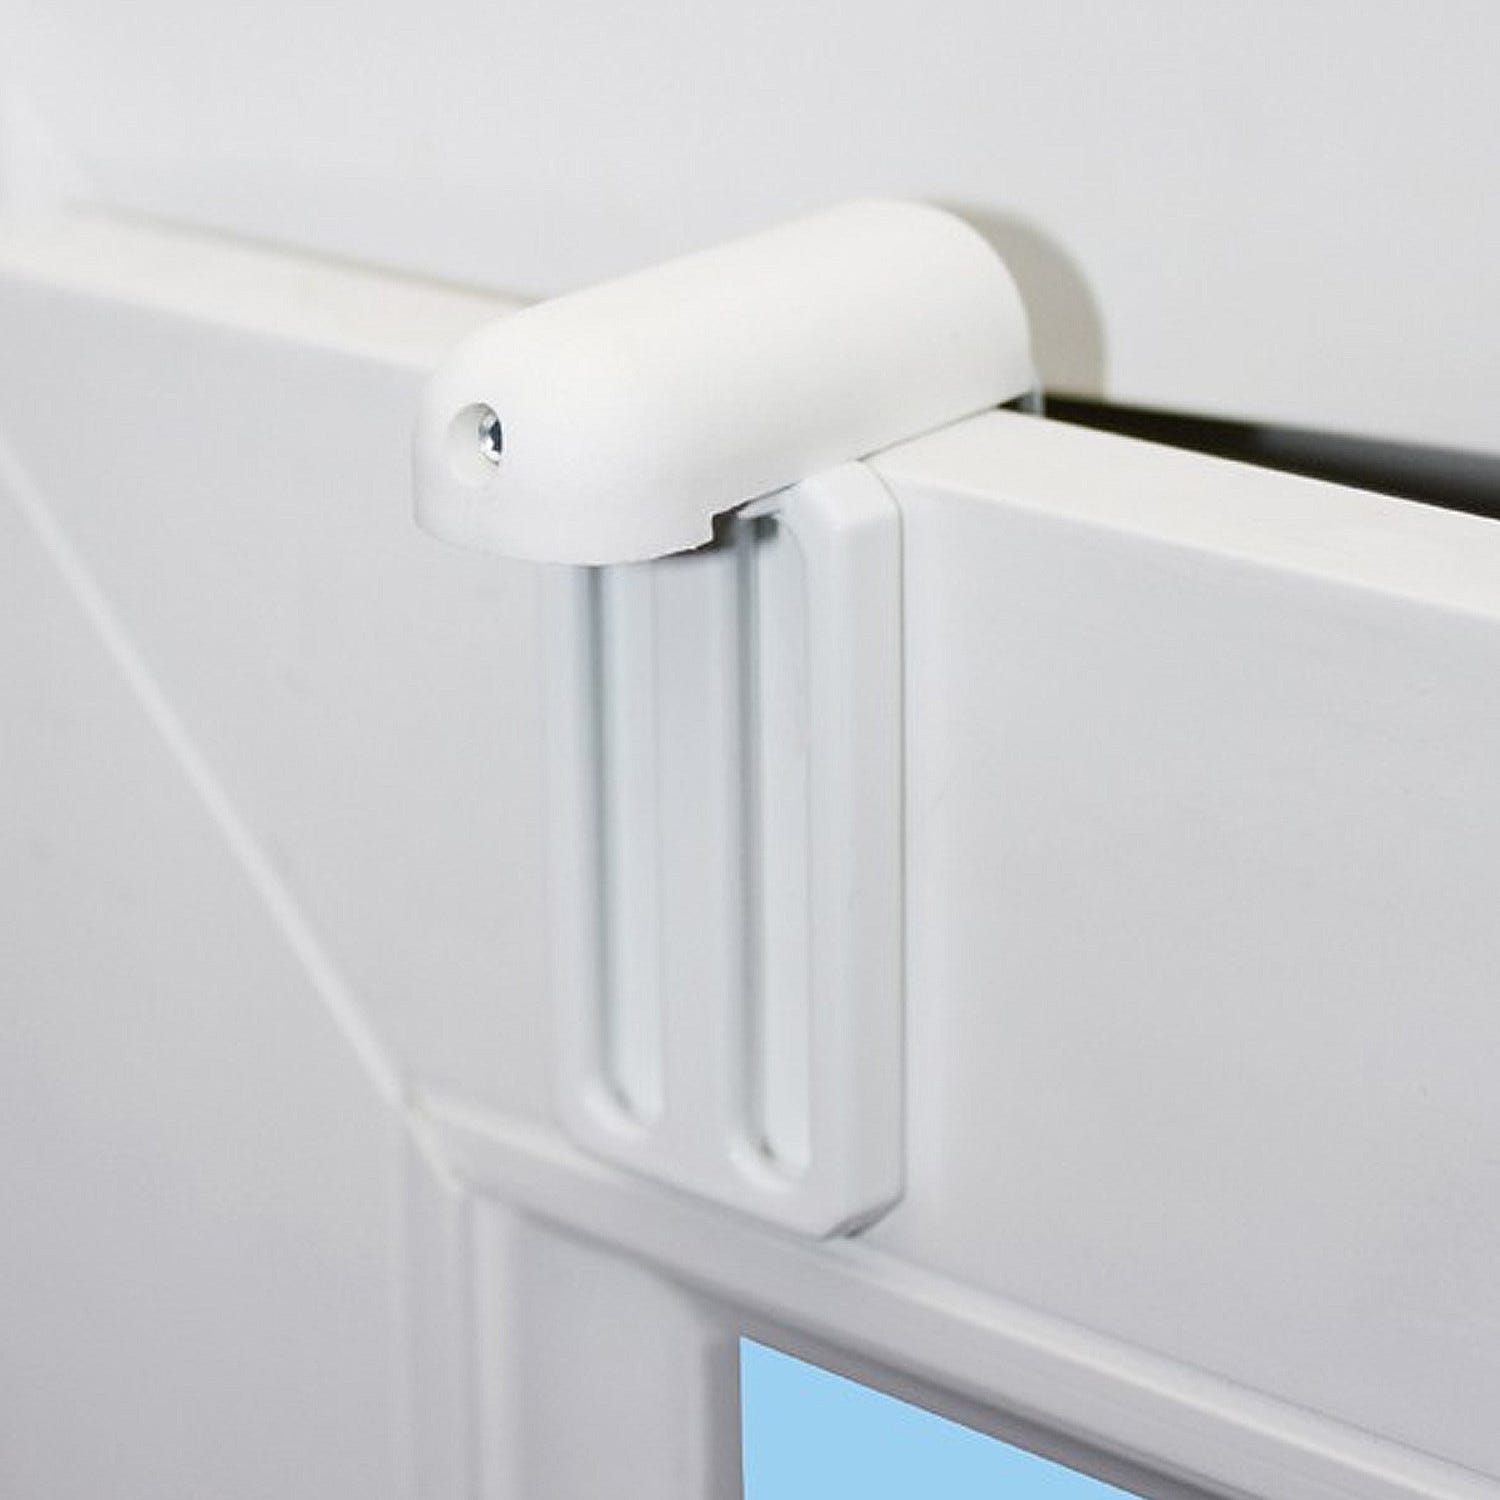 Support de fenêtre en PVC pour store blanc 2 pièces MADECO